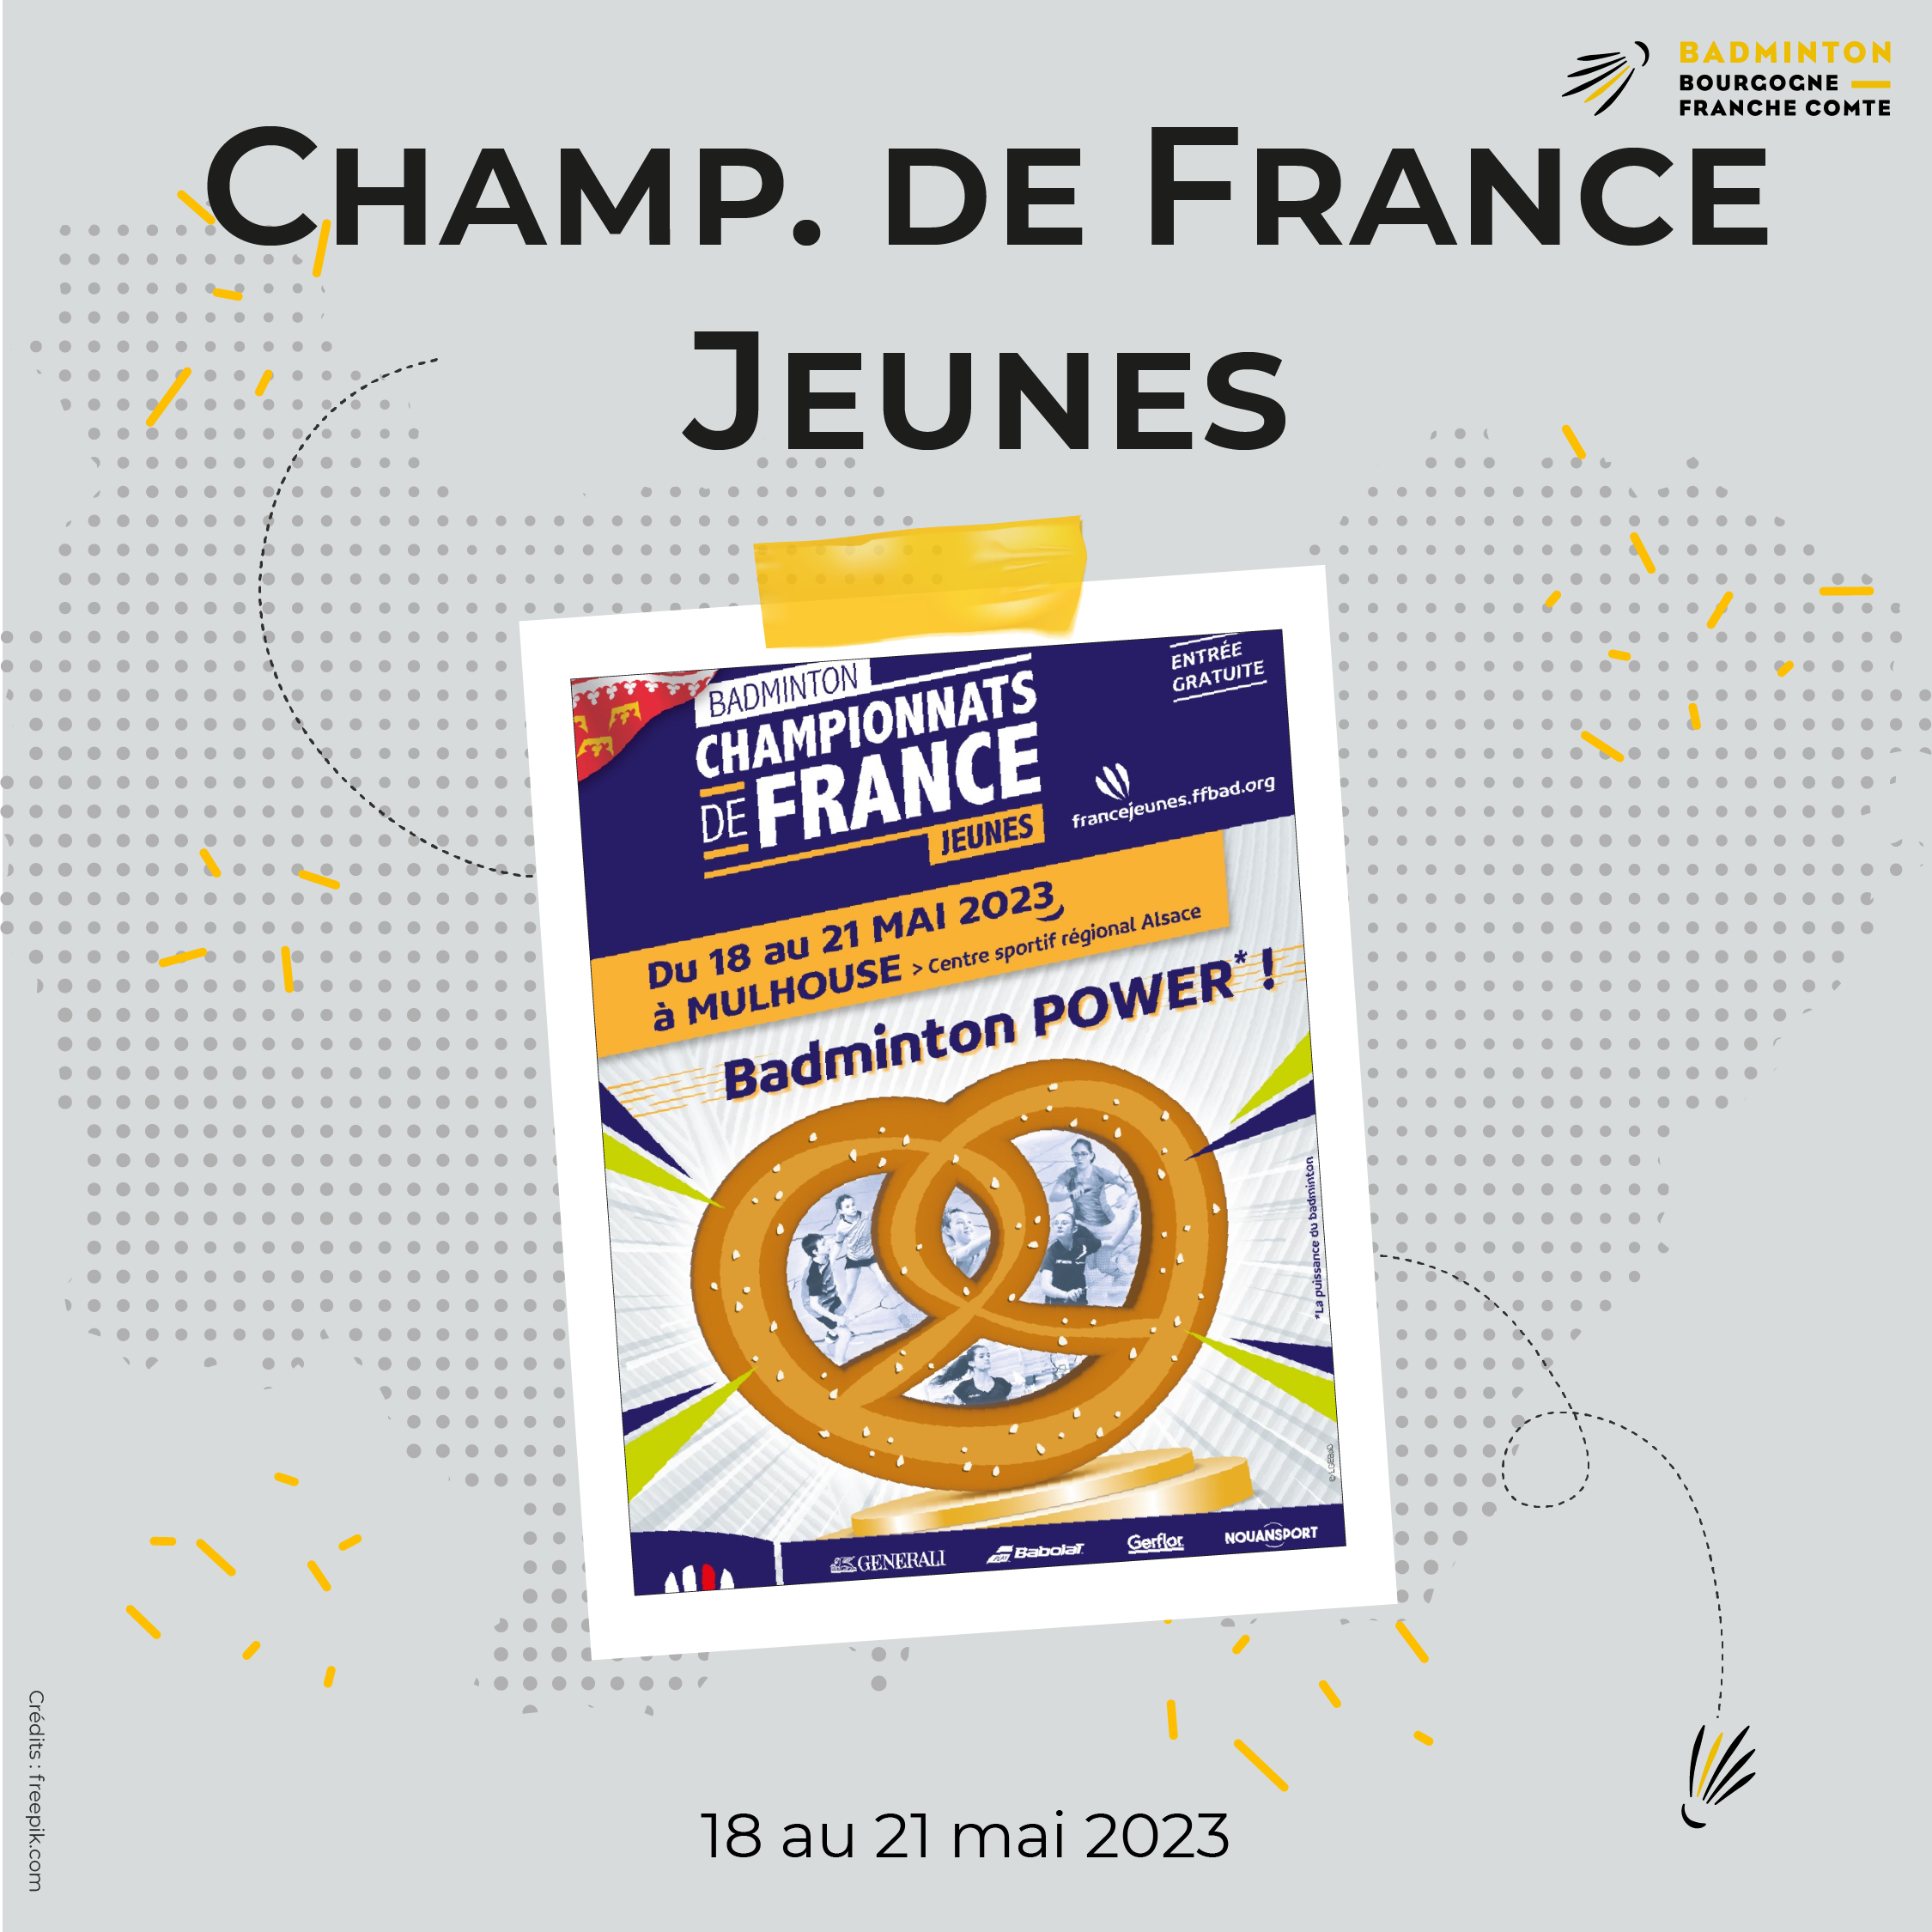 Champ. France Jeunes_Carré (pour Instagram) 01- 1080 x 1080 px